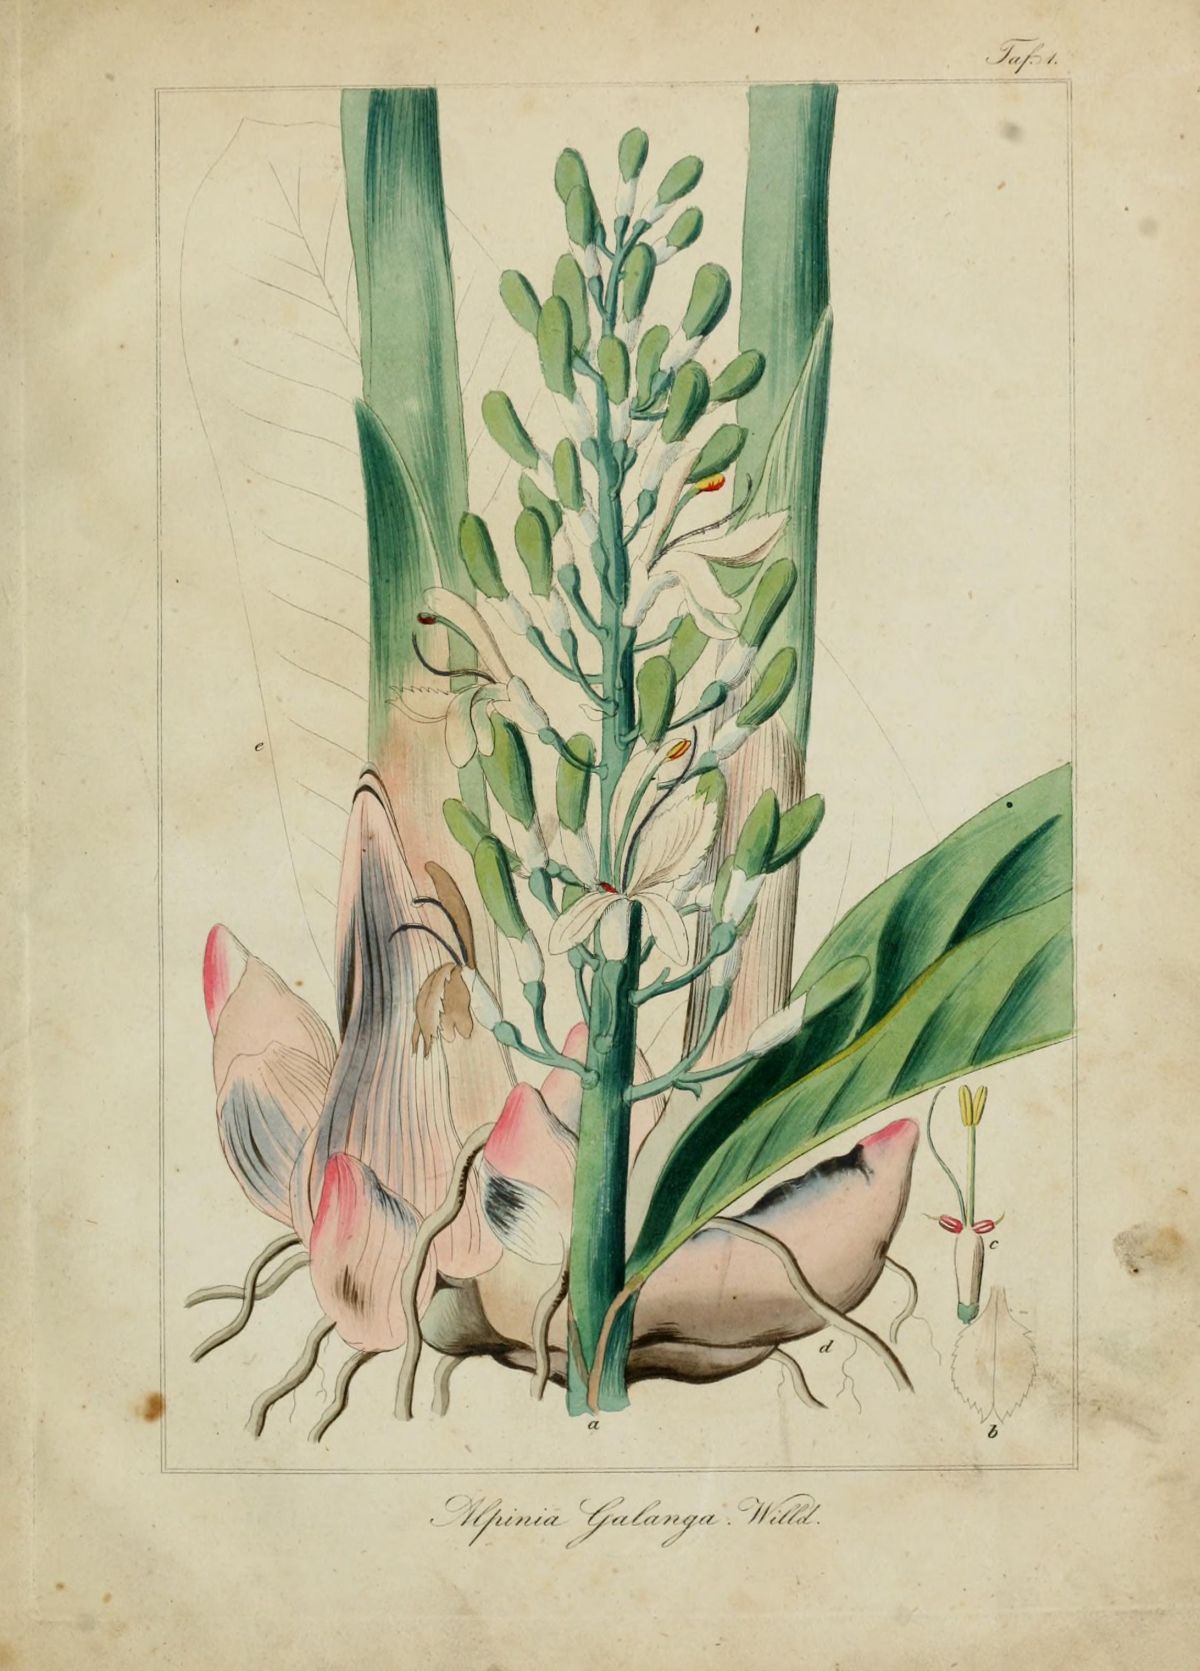 ຂ່າເປັນອິກຊະນິດທີ່ນິຍົມໃຊ້ປະກອບເຂົ້າໃນເຄື່ອງເທດ ຮູບແຕ້ມຈາກໜັງສື: Stupper, C., Medicinisch-pharmaceutische Botanik (1841-1843)